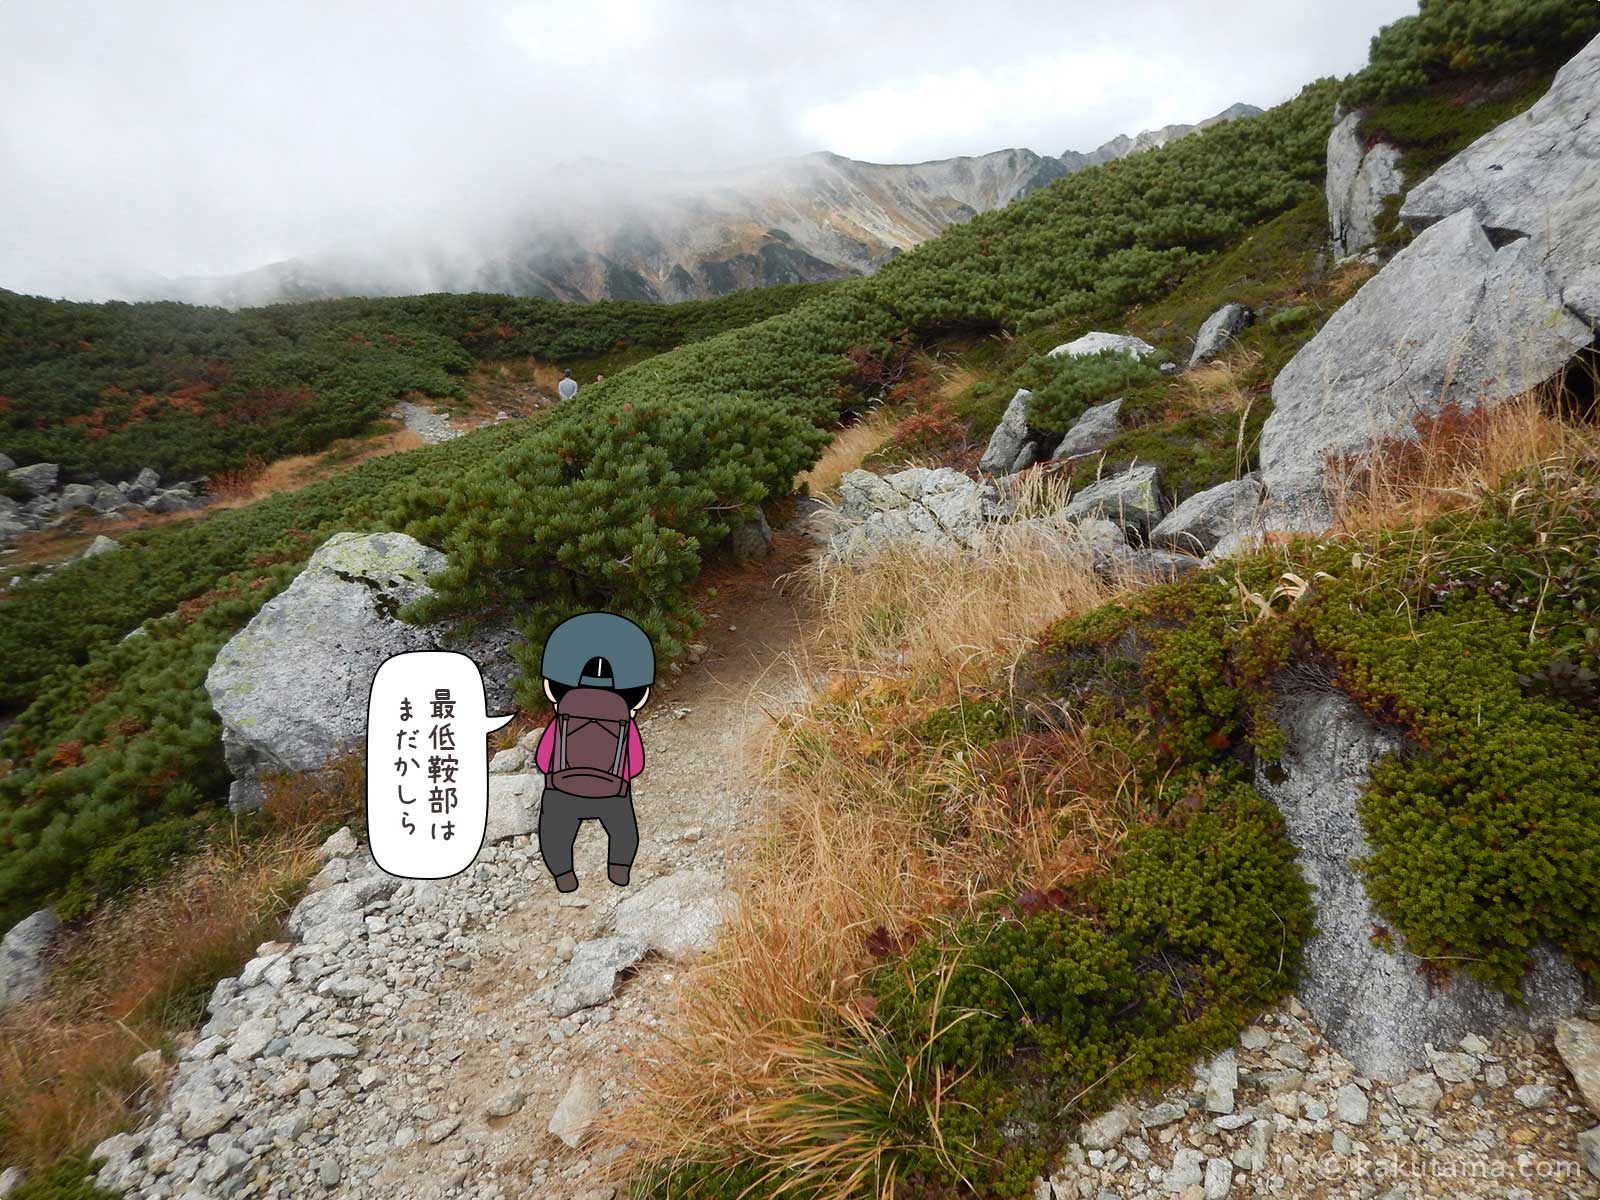 東沢乗越までどのくらいか考える登山者のイラスト